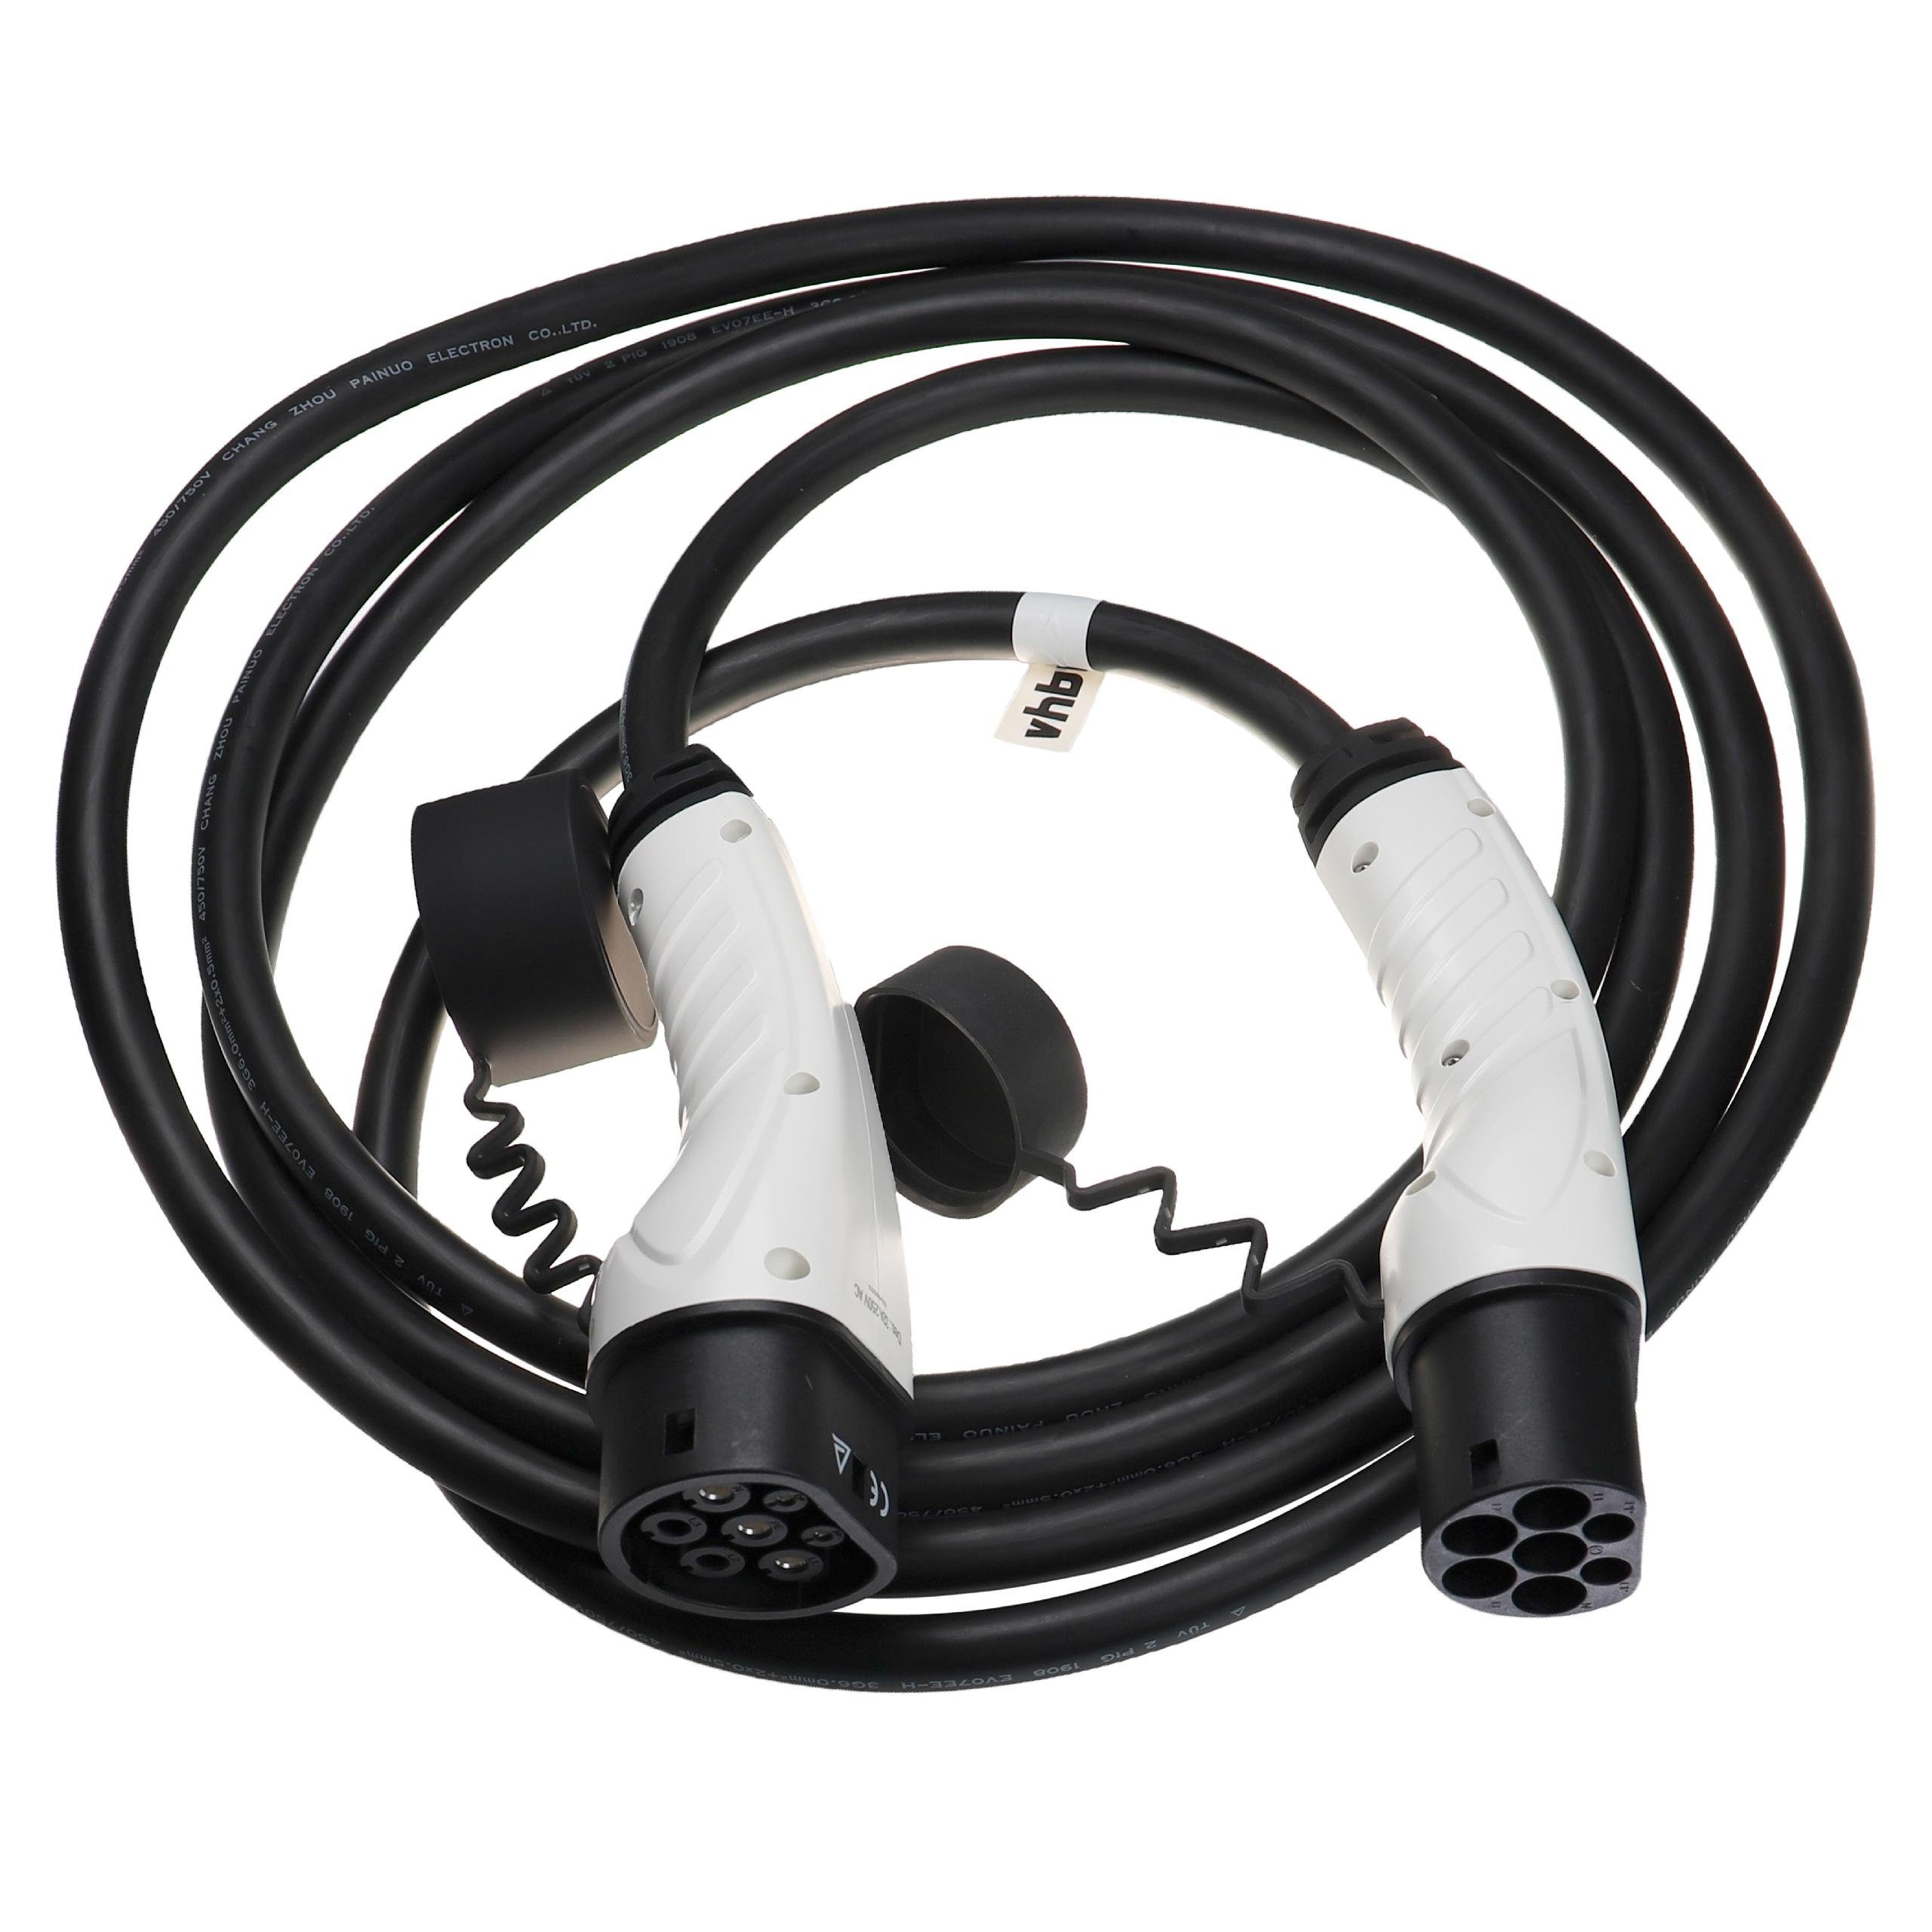 Kangoo passend Ladekabel E-Tech, für Elektro-Kabel Master vhbw E-Tech, Megane Renault